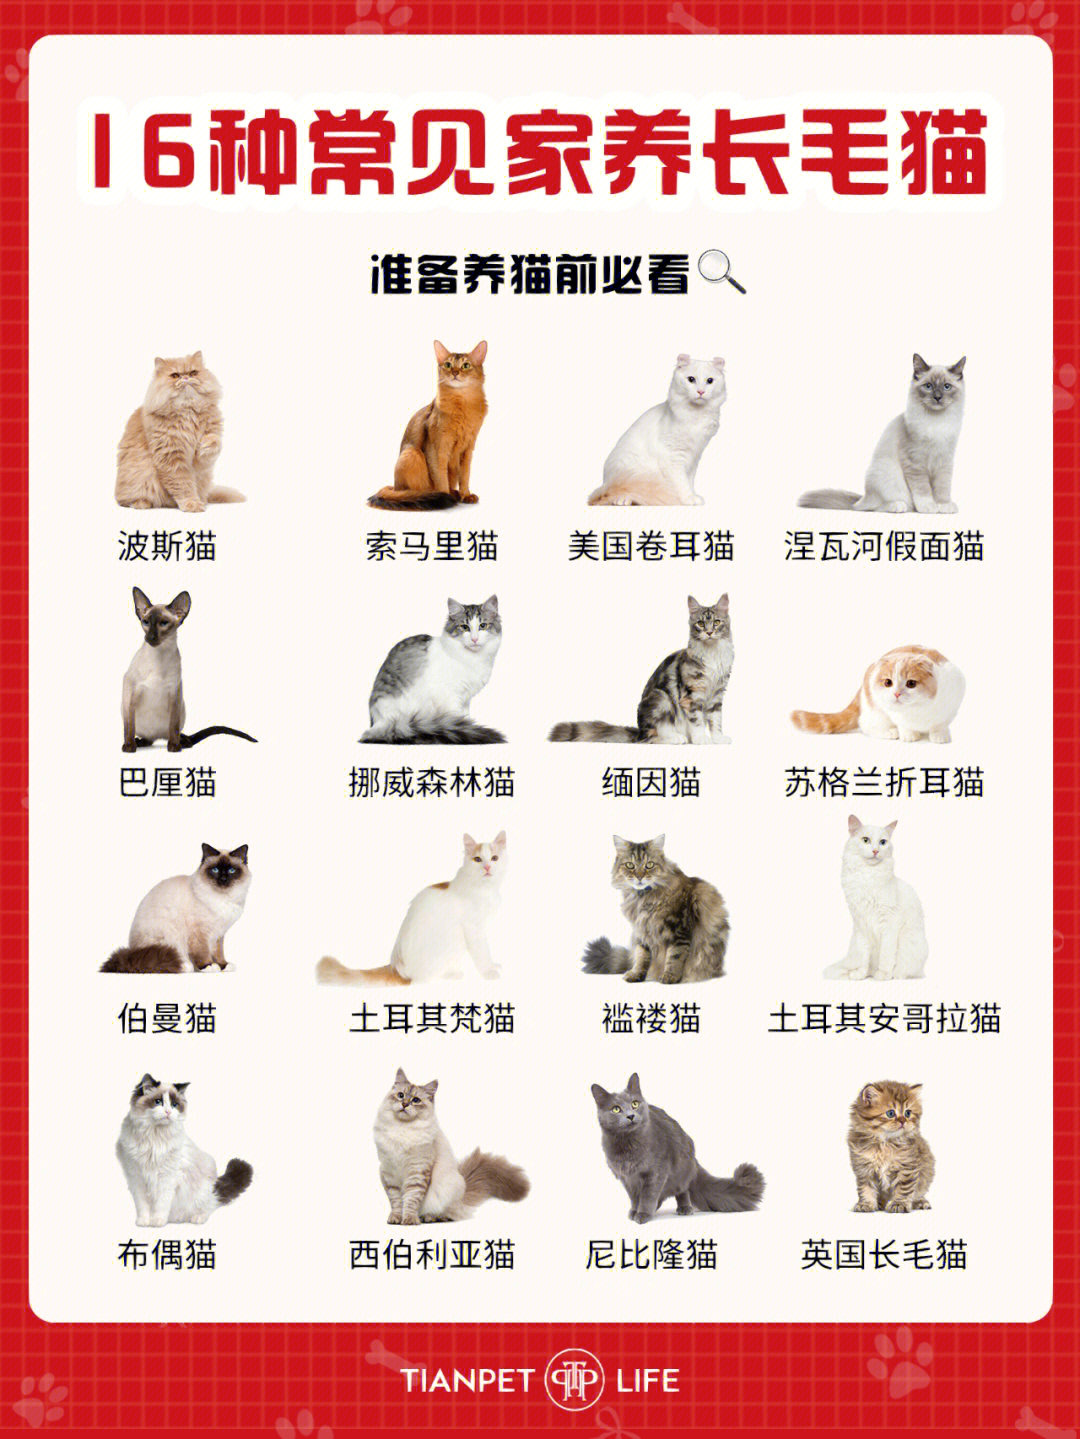 名猫的种类和图片名字图片